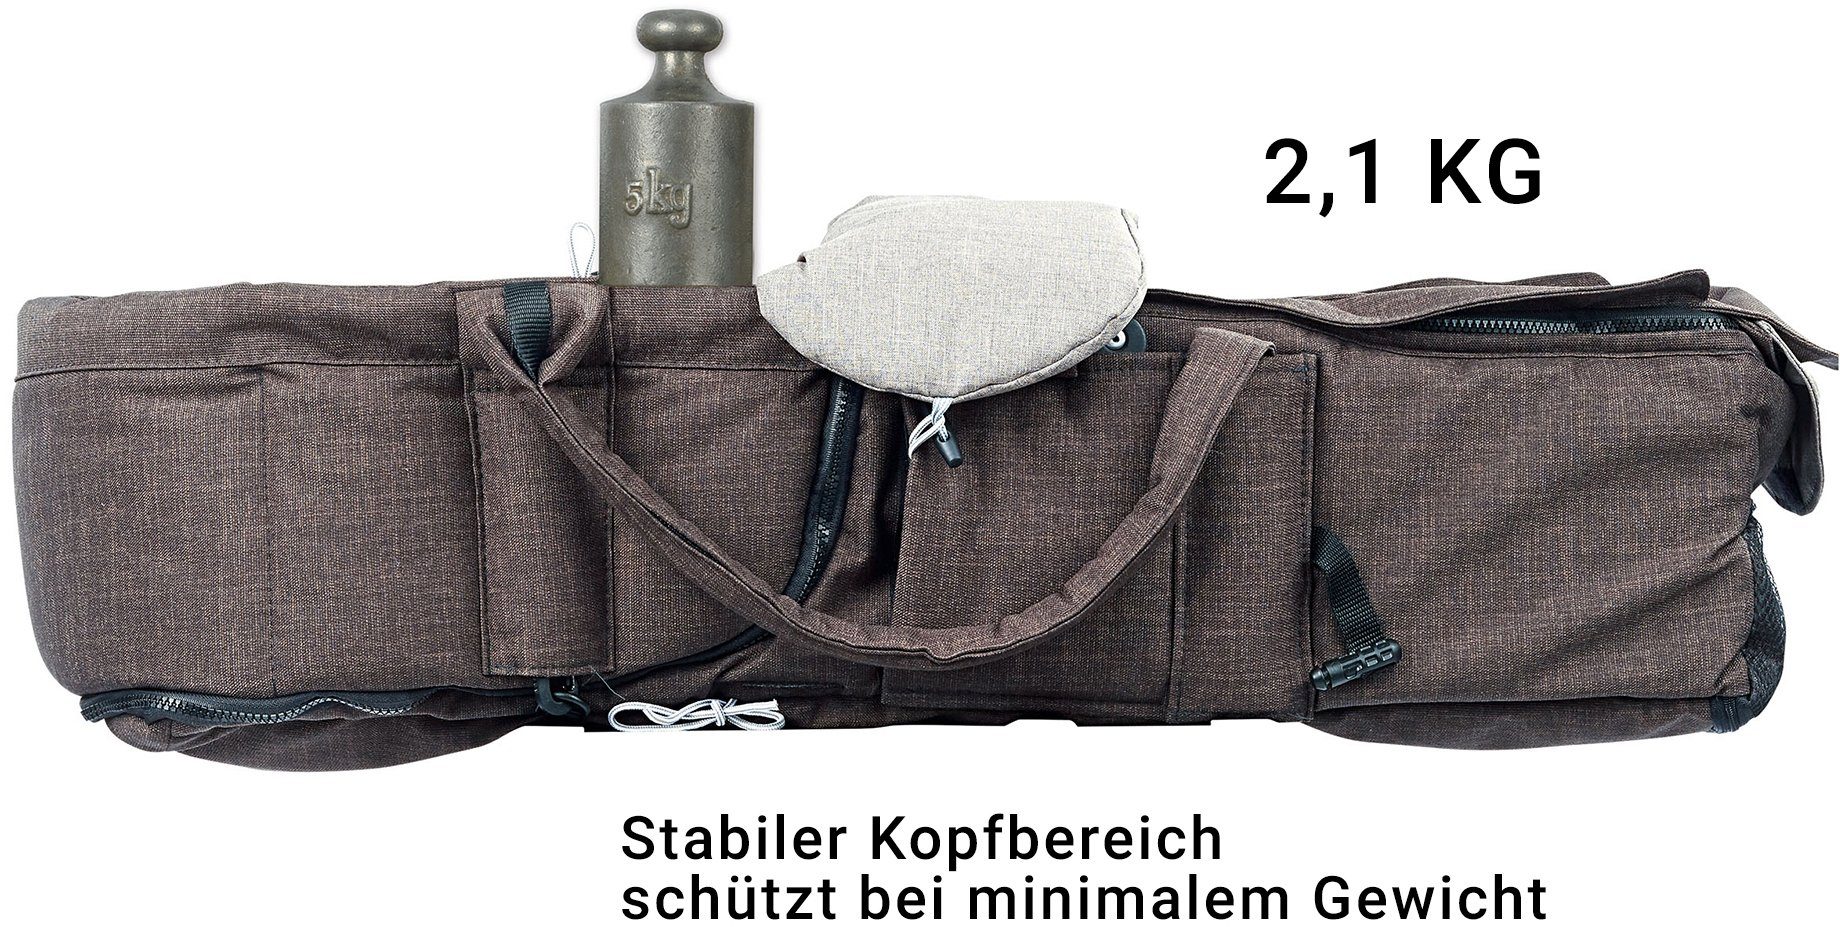 aus Tragetasche Gesslein eloxiert/tabak, C1 Handarbeit F10 & Design Air+, Deutschland Kombi-Kinderwagen Lift; mit grau meliert/Streifen,